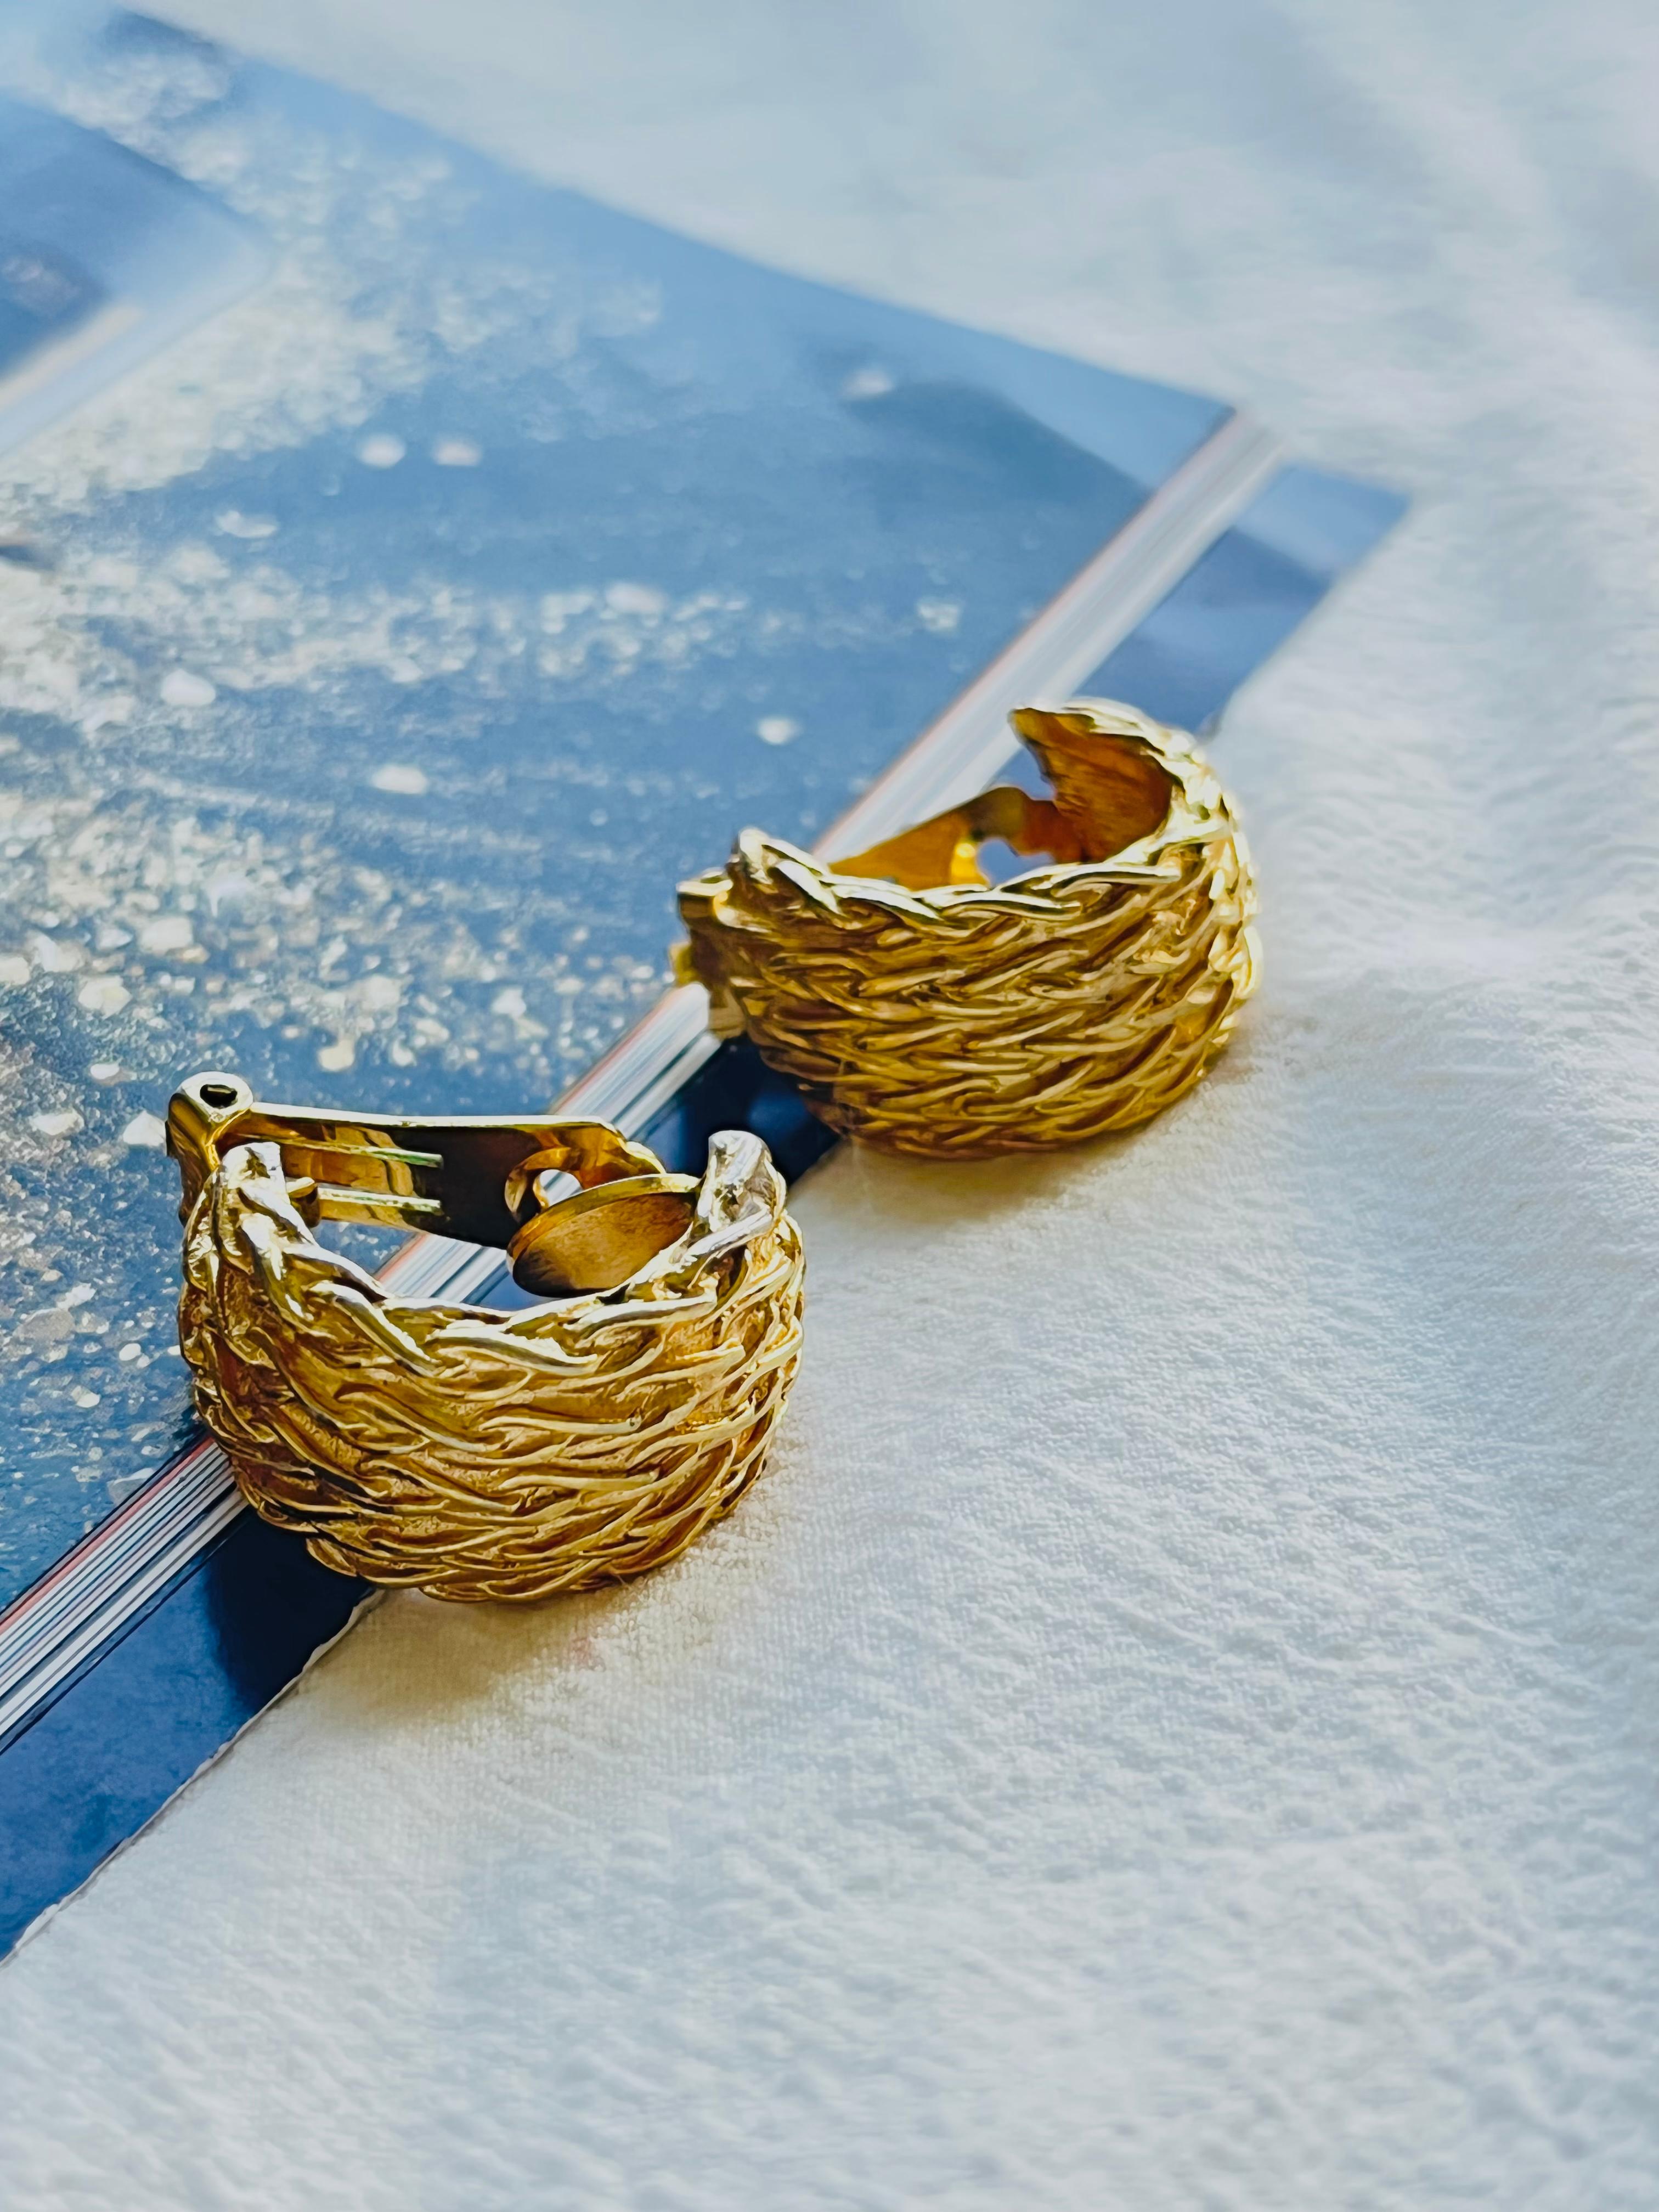 Christian Dior Vintage 1980er Jahre große Hälfte Hoop Twist Seil klobig Clip Ohrringe, Gold-Ton

Sehr guter Zustand. Einige leichte Kratzer oder Farbverluste, kaum wahrnehmbar. Eine Ohrringrückseite ist abgeschnitten, aber noch gut zu tragen. 

Ein